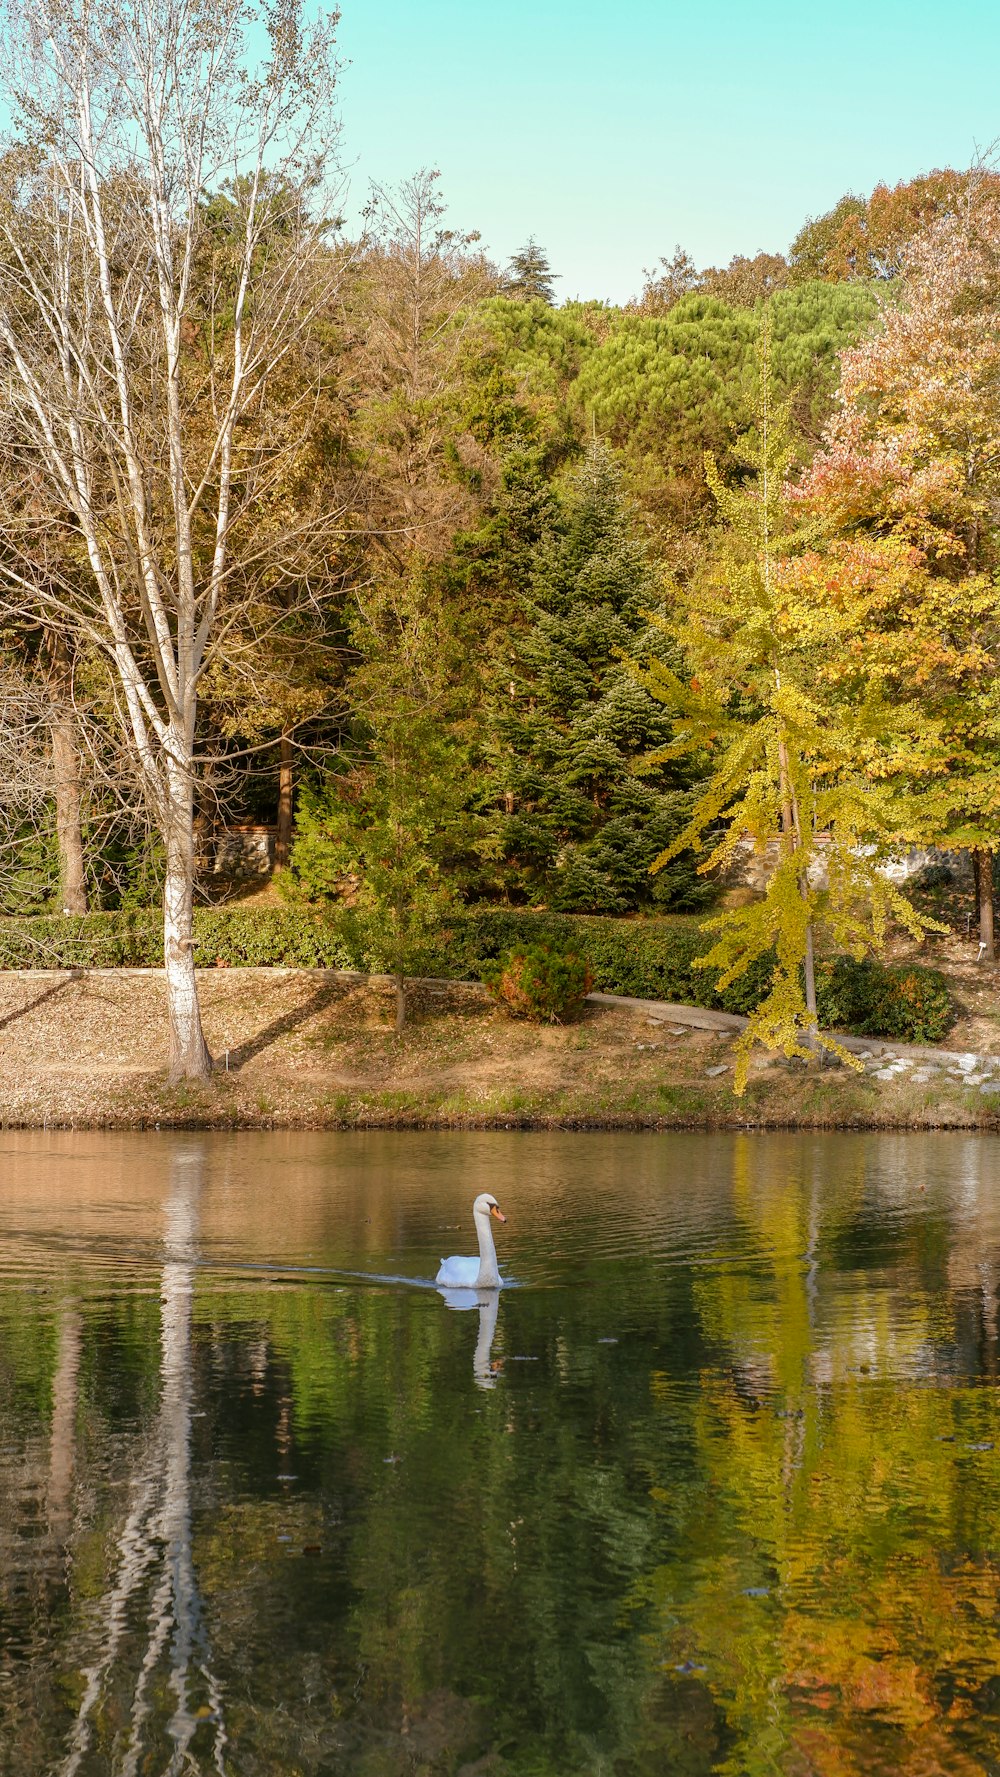 Un cisne nadando en un lago